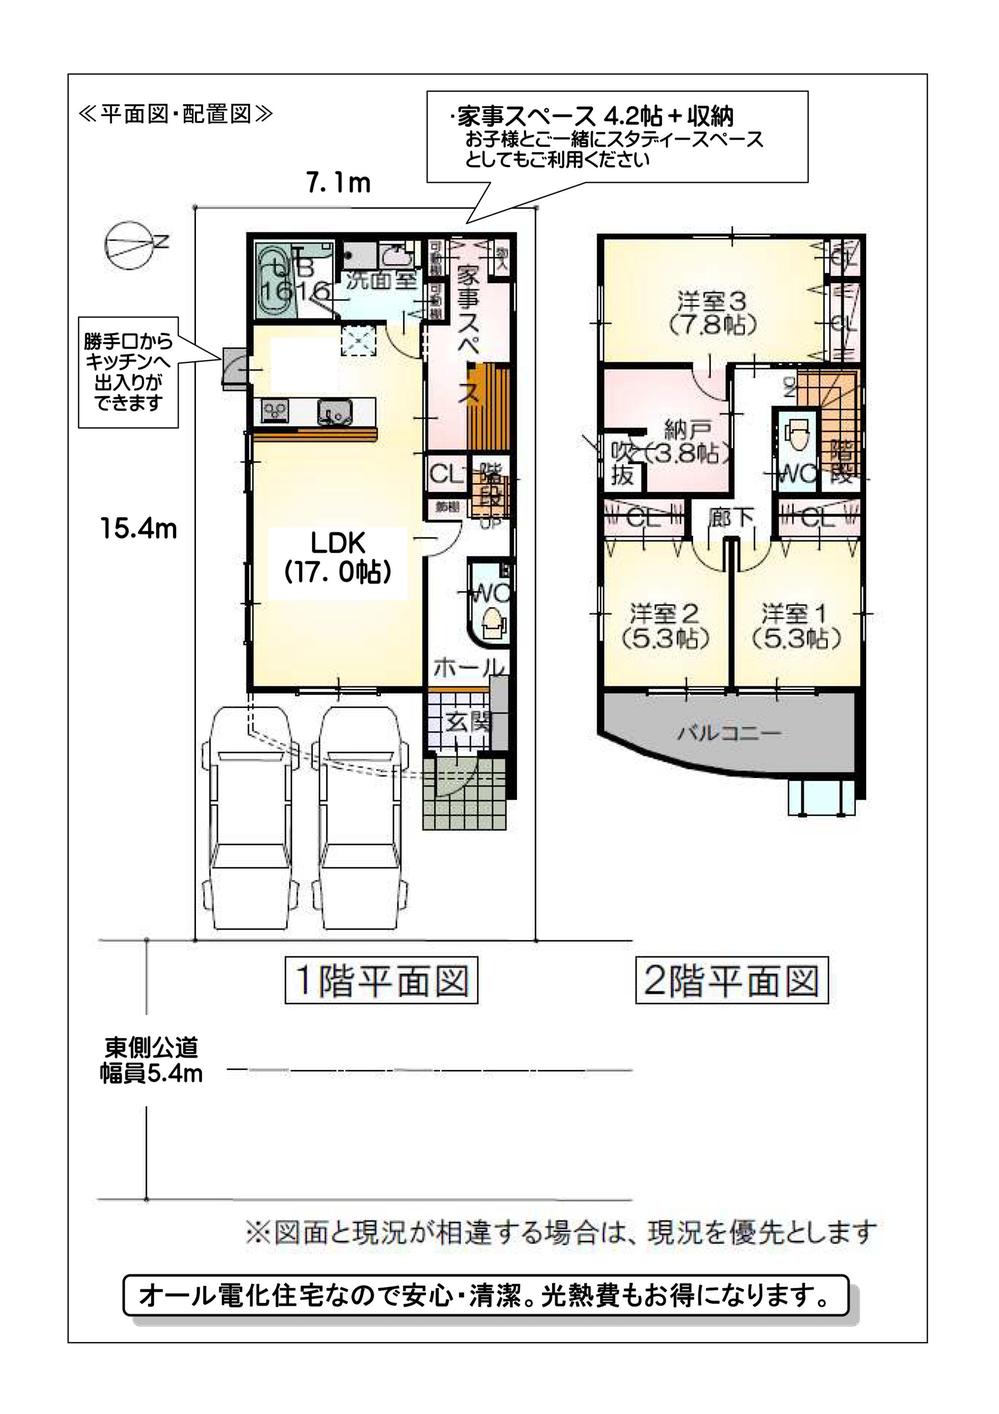 Floor plan. 39,500,000 yen, 3LDK + S (storeroom), Land area 109.72 sq m , Building area 105.59 sq m back door ⇔ water around ⇔ housework corner Efficiency of good housekeeping flow line